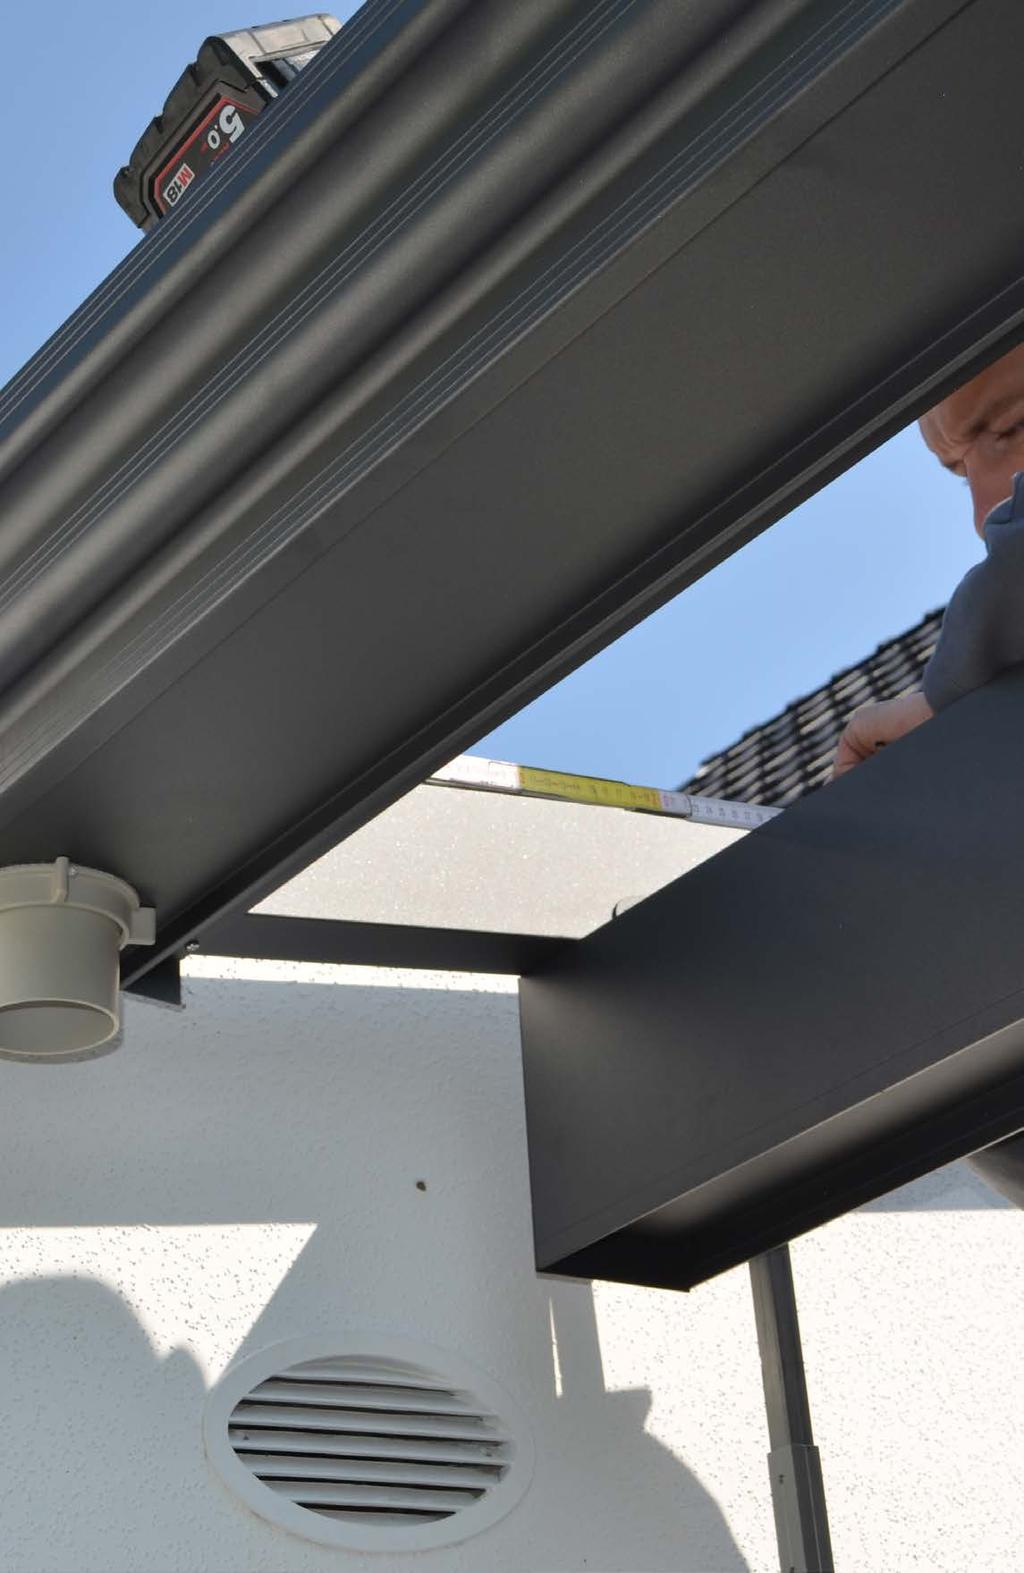 Dacheindeckung VSG klar/milchig Die Dacheindeckung mit klarem VSG- Verbundsicherheitsglas bezeichnet man als